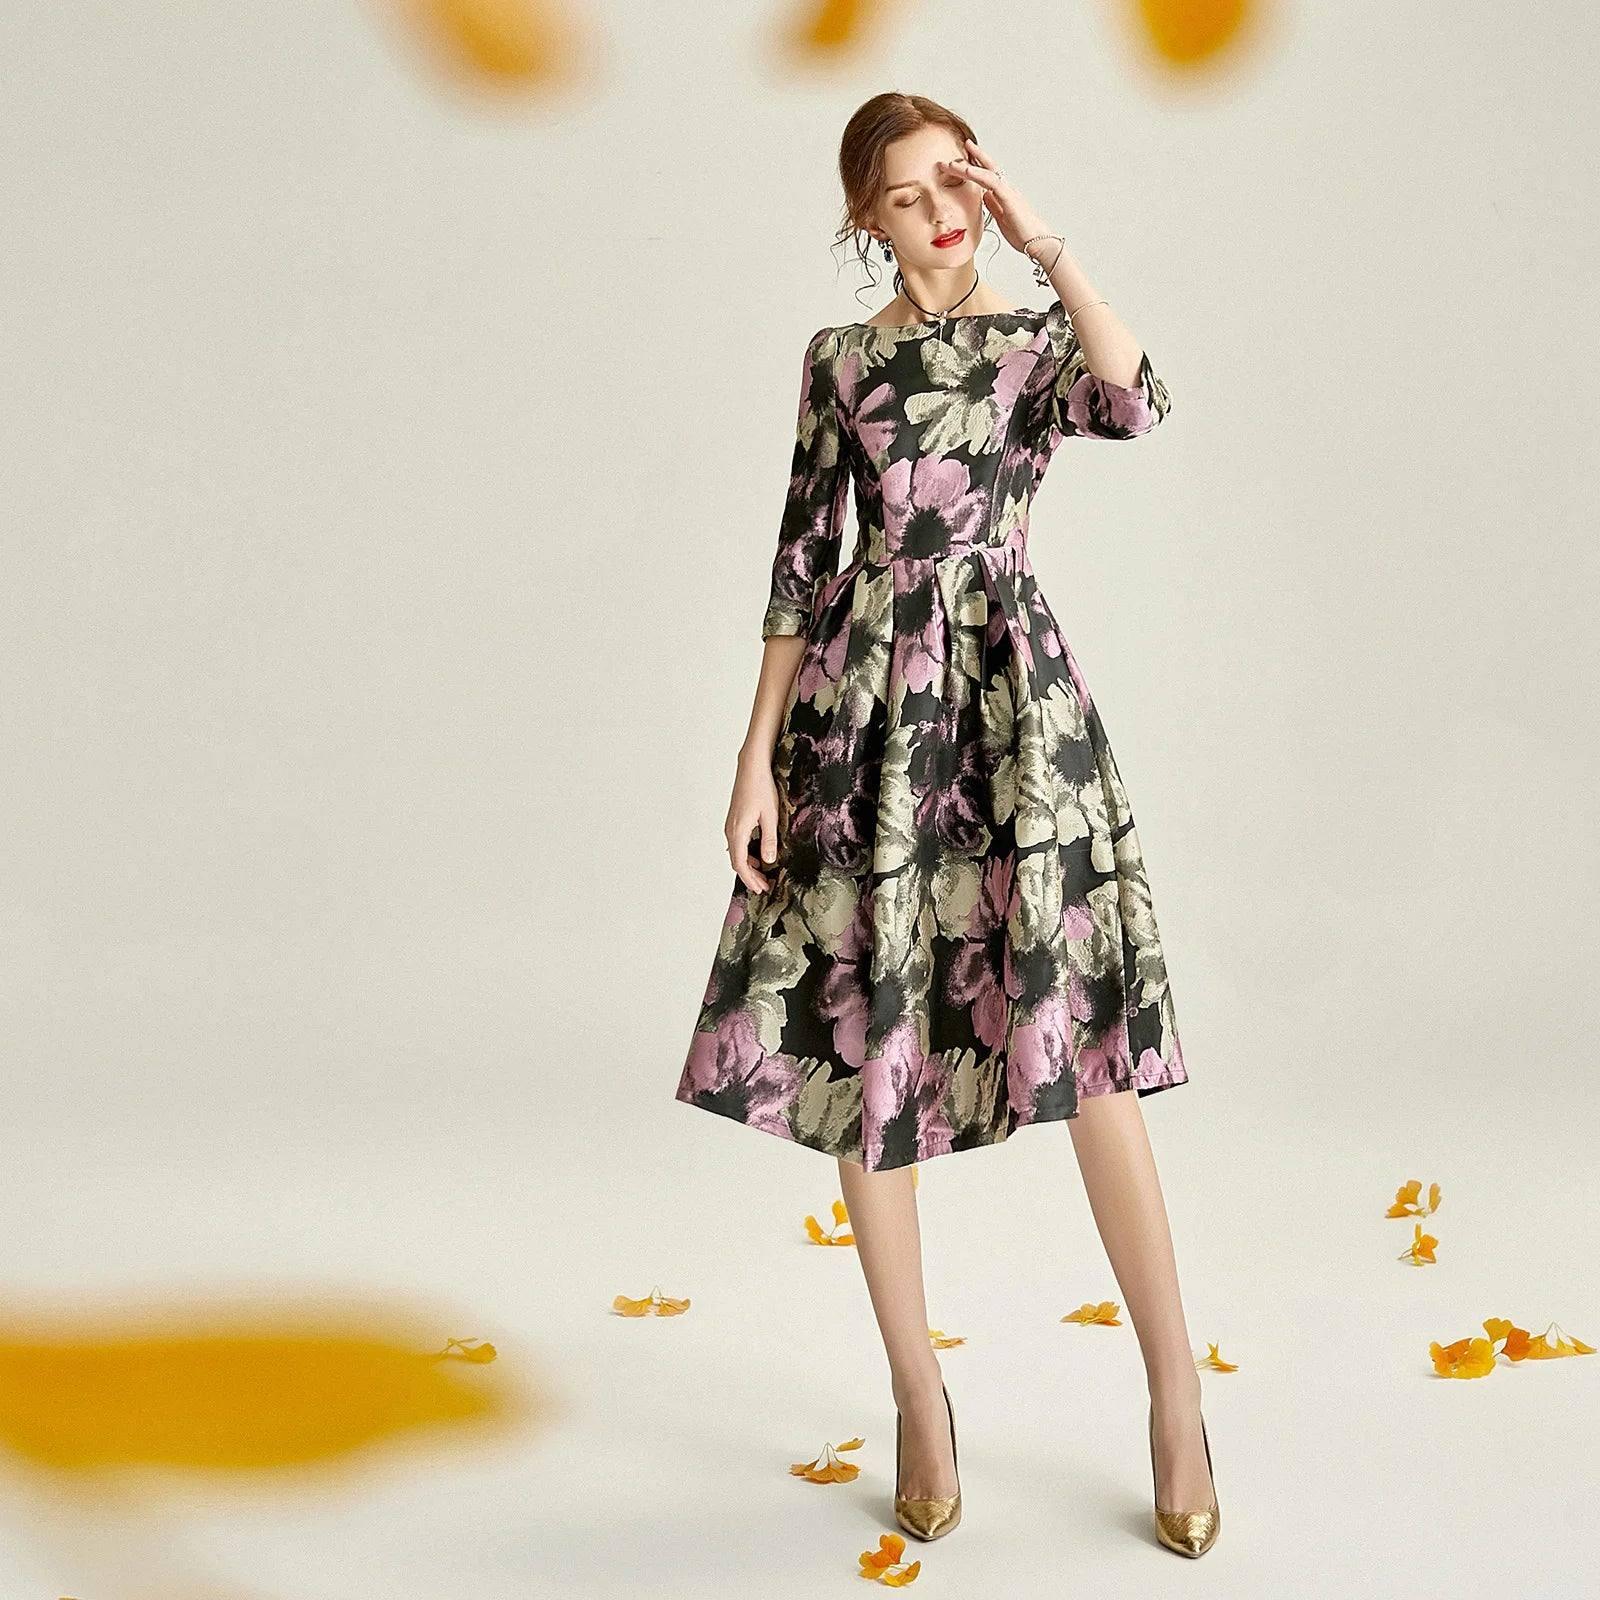 Elegant Floral Midi Dress for Spring Events-2